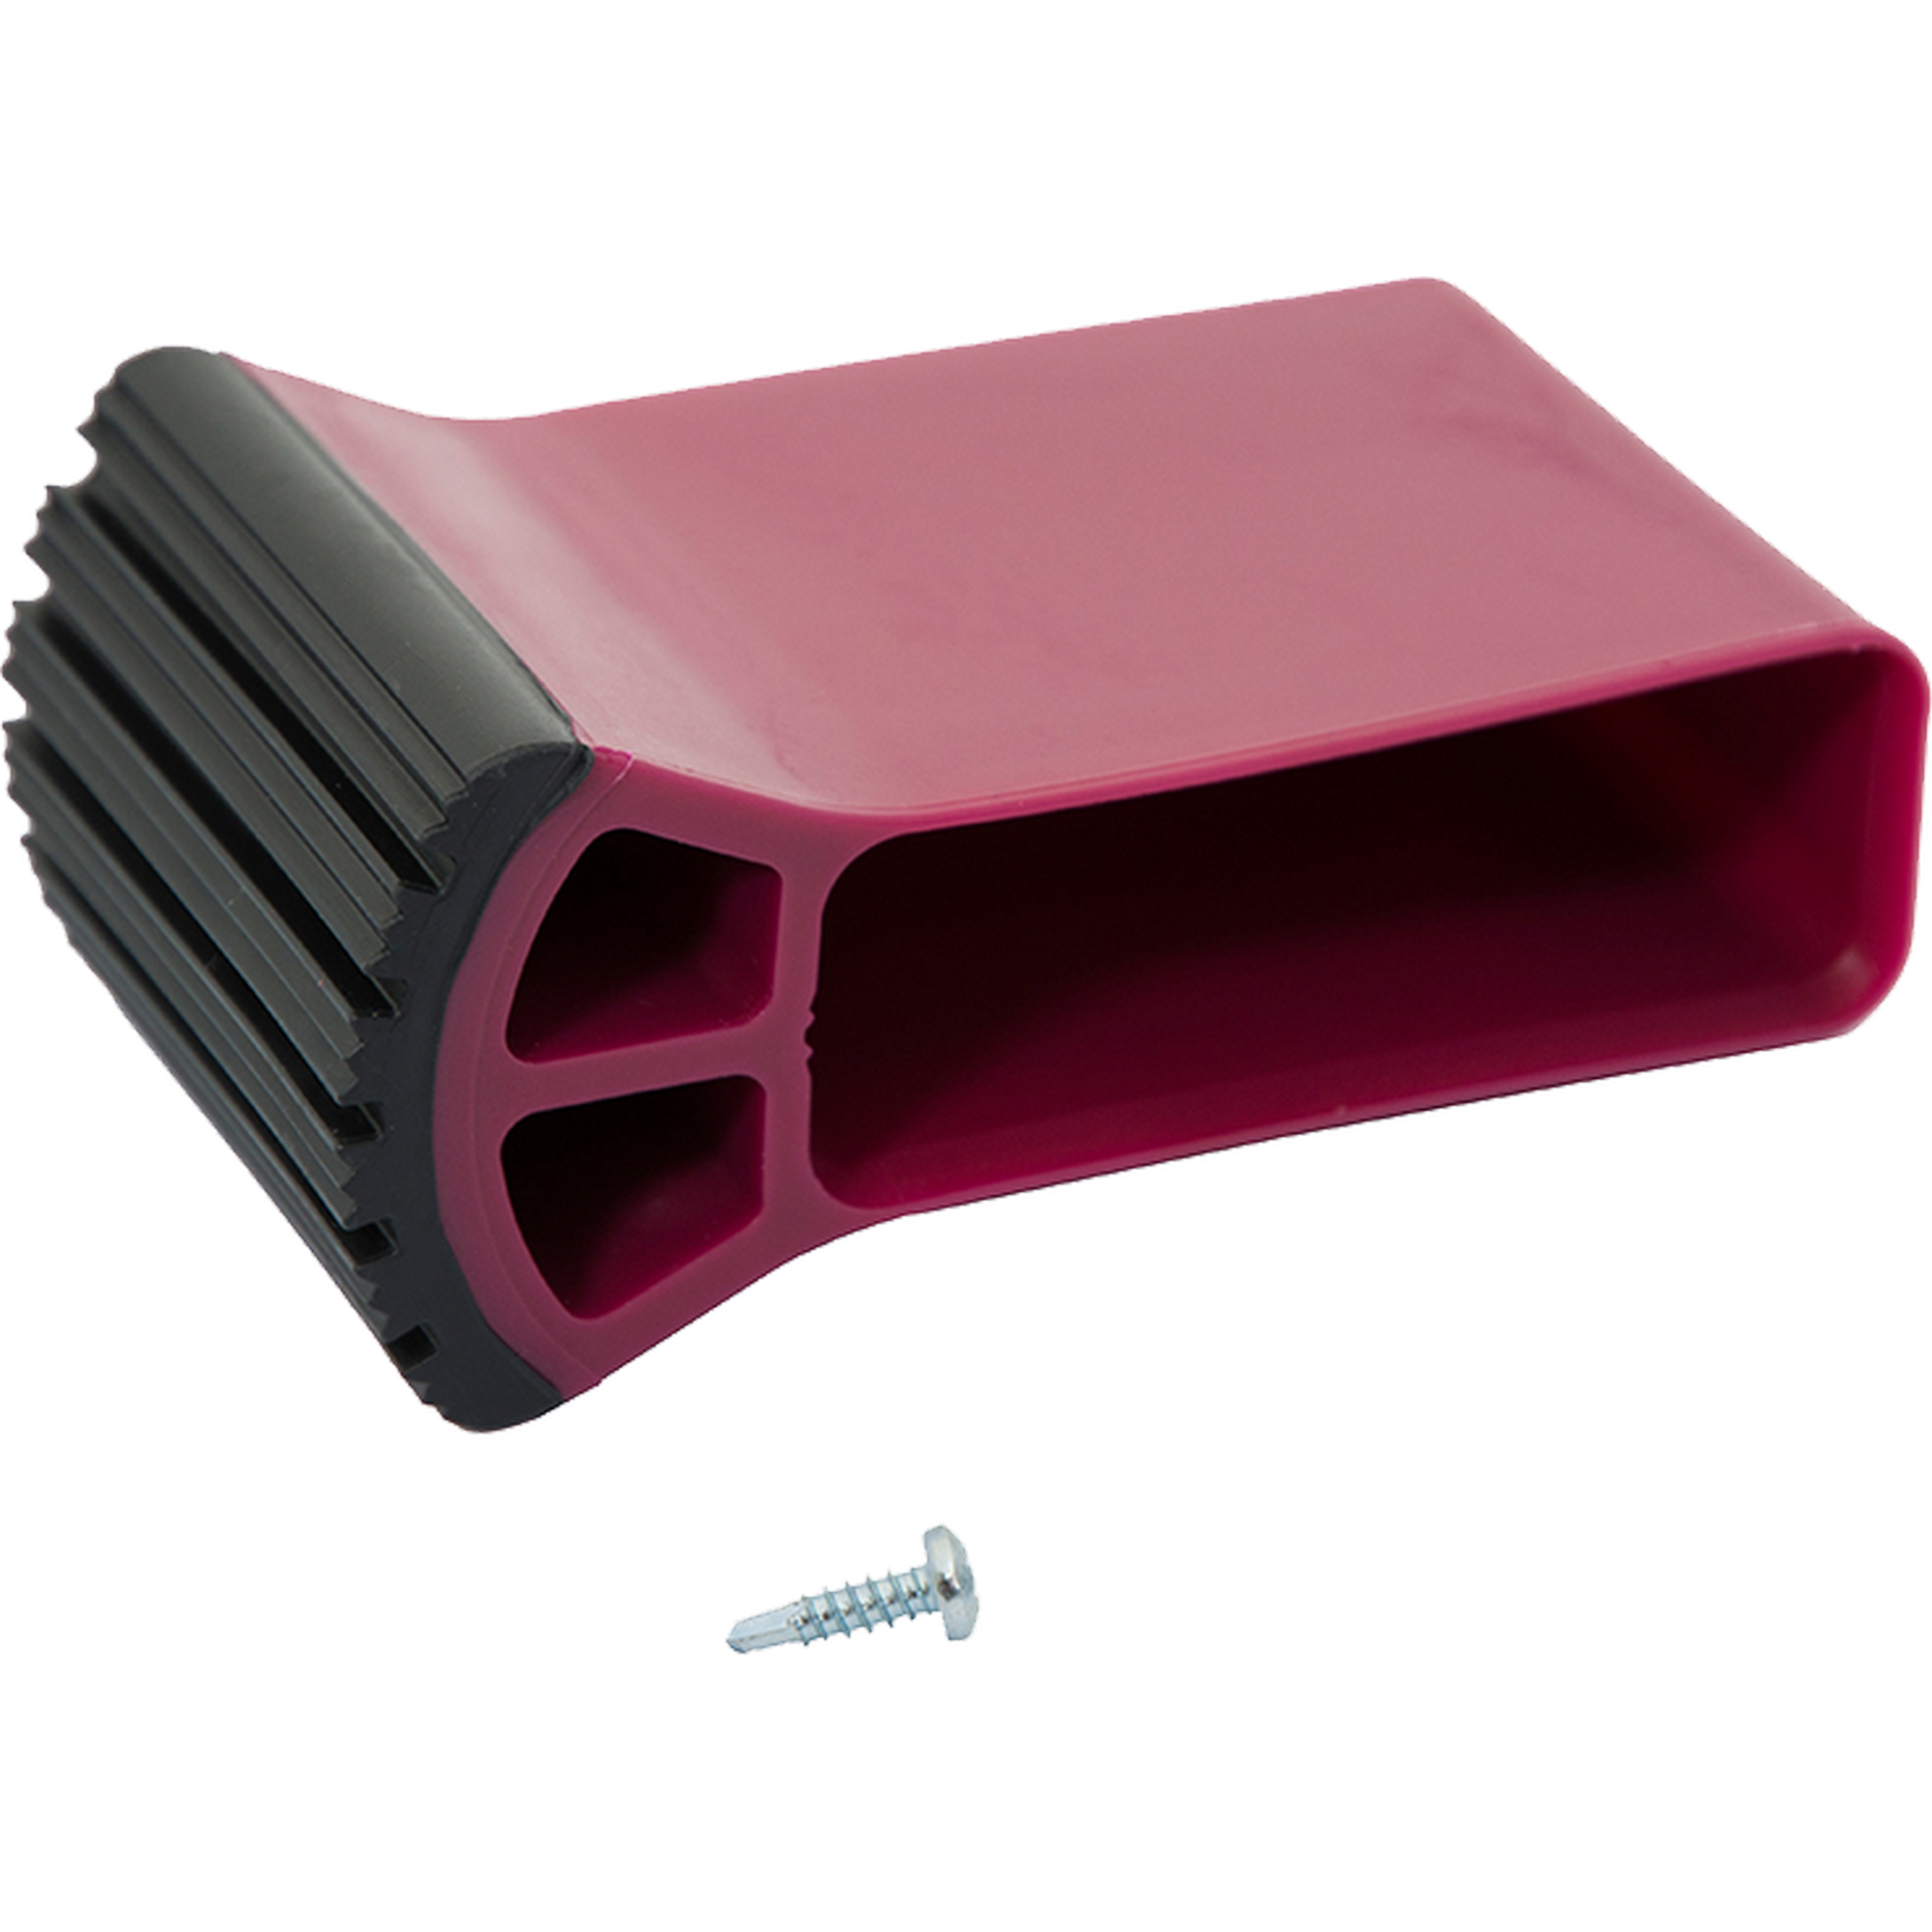 Traversenfußkappe für Stufenleitern schwarz/violett 61,5 x 20 mm + product picture